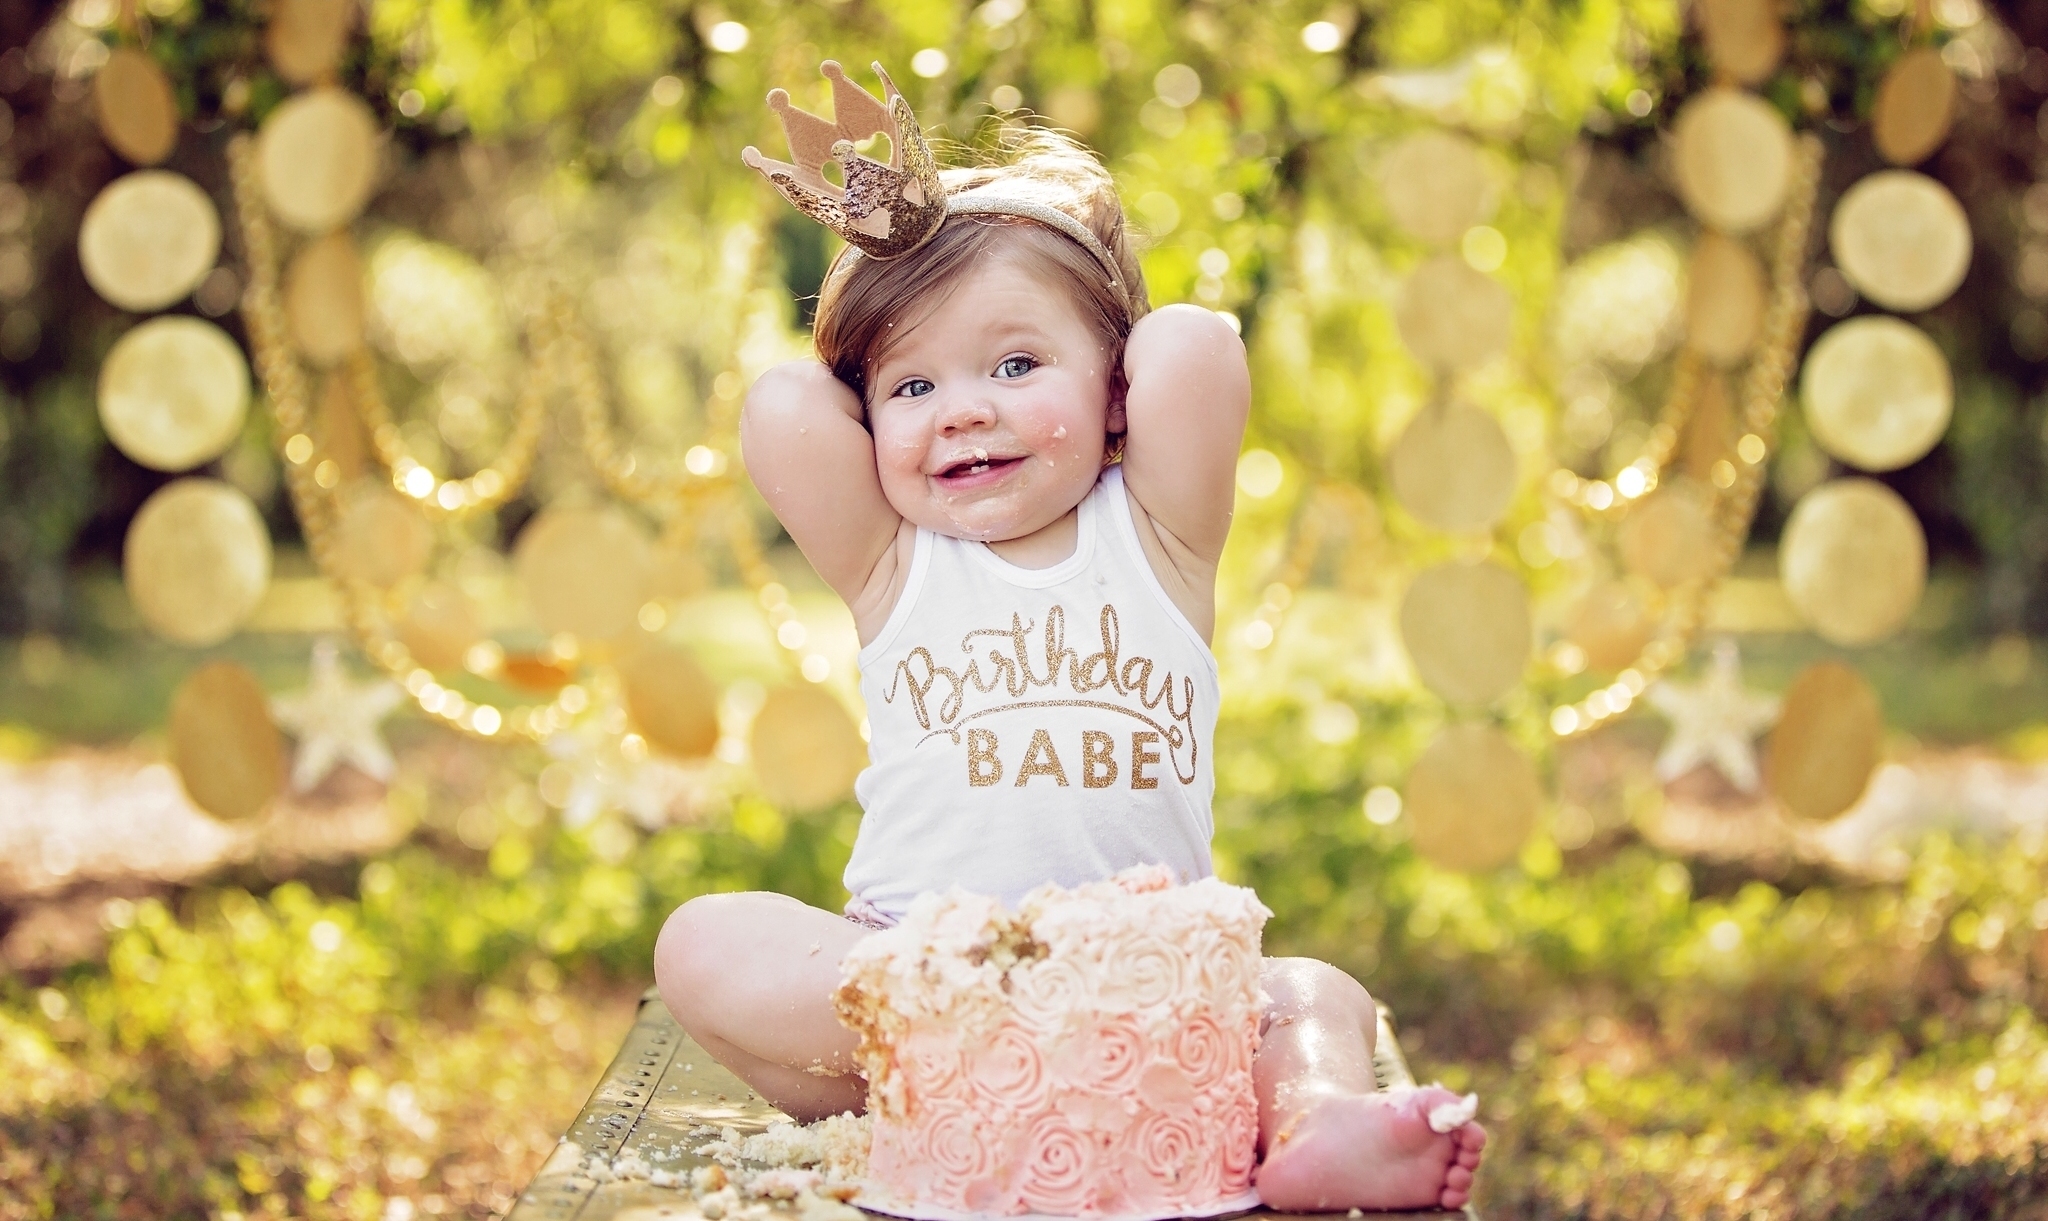 Image: Baby, girl, sitting, cake, celebration, crown, princess